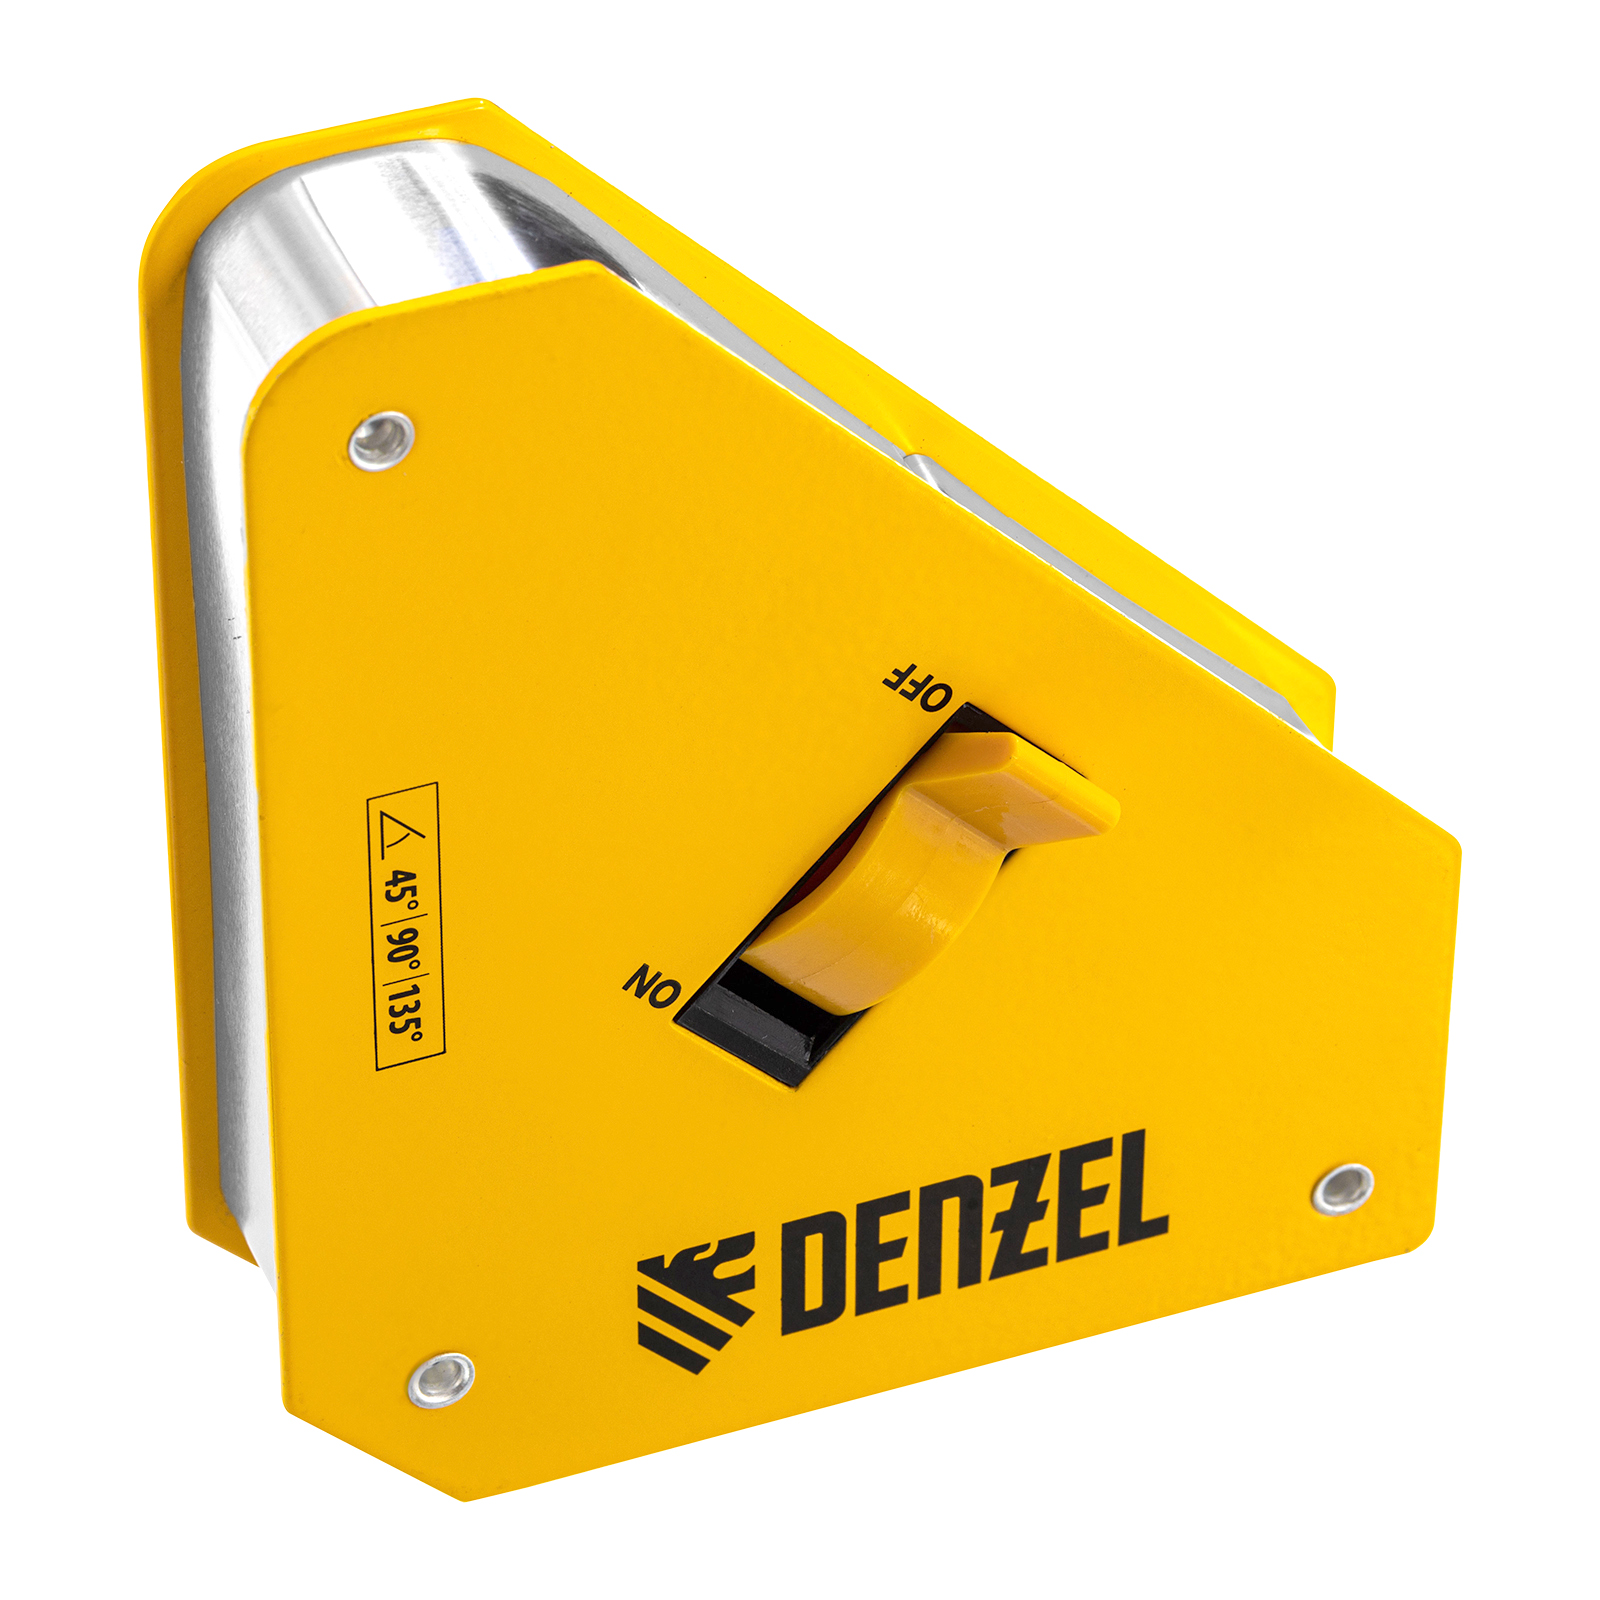 Фиксатор магнитный отключаемый для сварочных работ DENZEL усилие 55 LB, 45х90 град. 97562 фиксатор магнитный отключаемый для сварочных работ denzel усилие 30 lb 45х90 град 97561